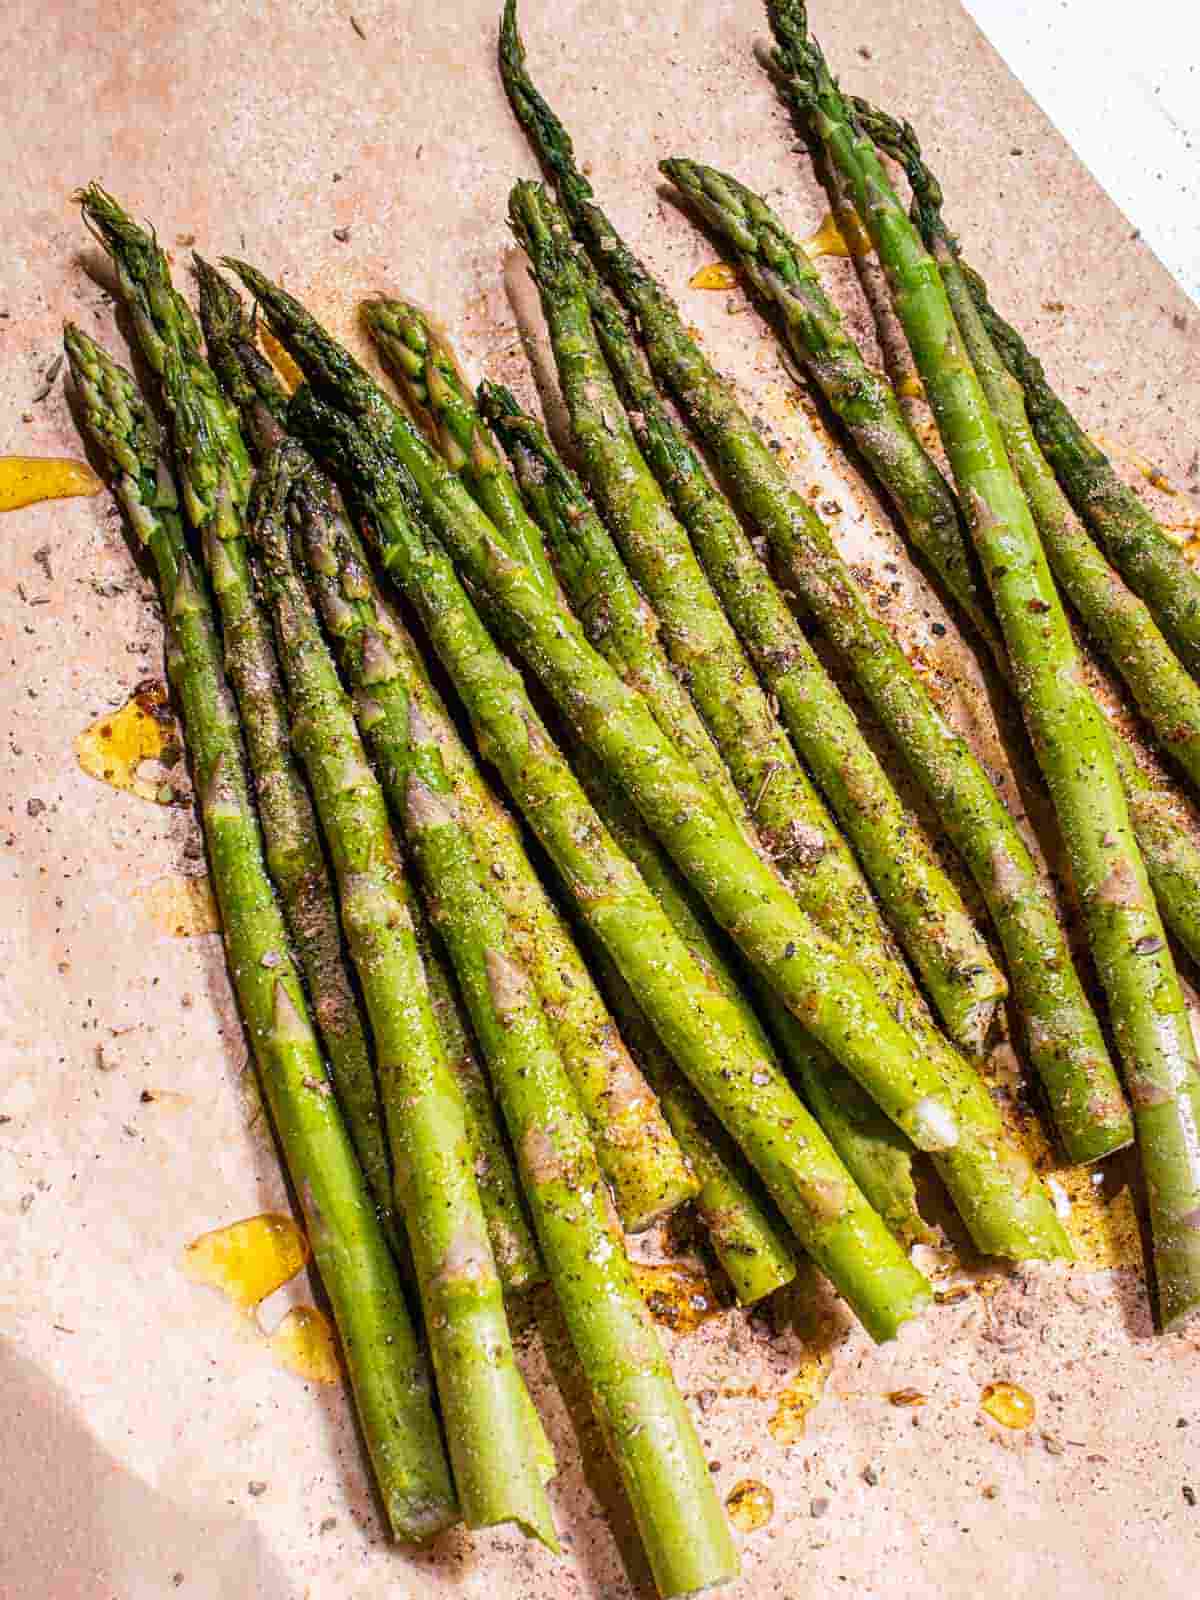 seasonings on asparagus